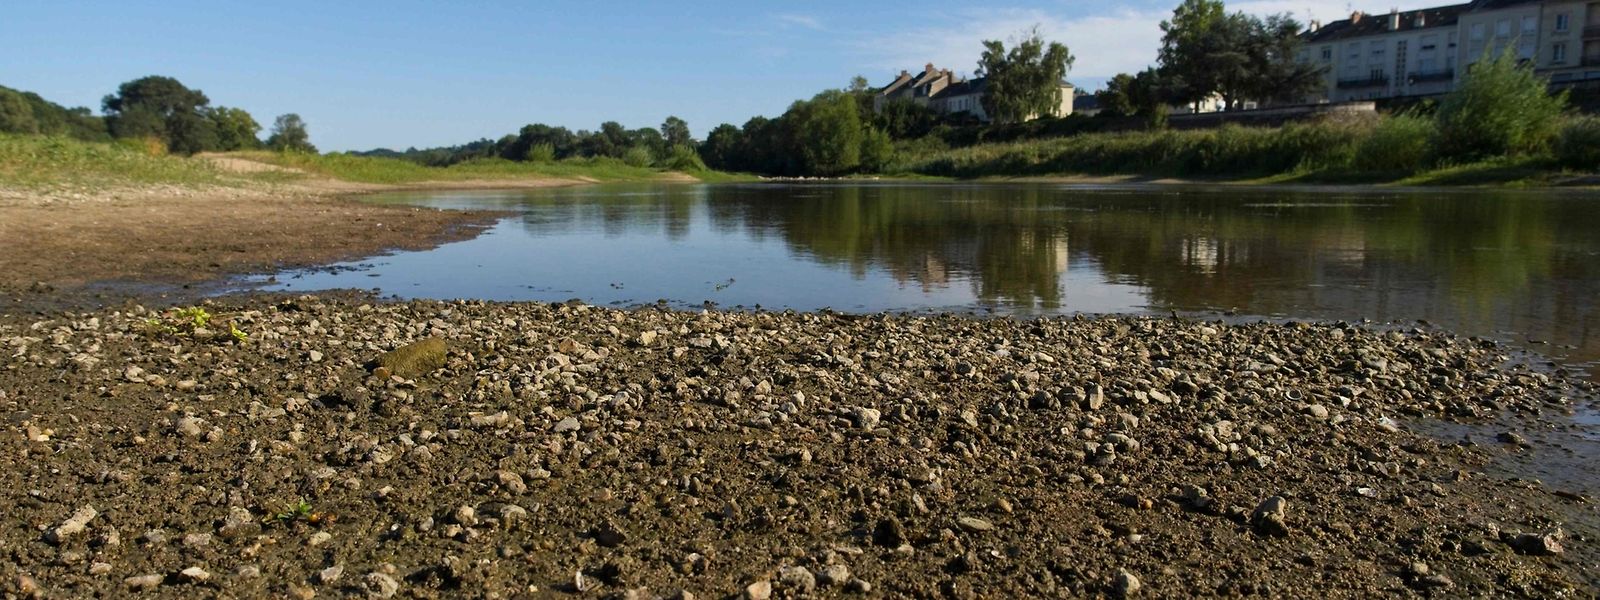 O rio Loire, em França, está no nível mais baixo, após as ondas de calor que têm assolado a Europa desde o início do verão.